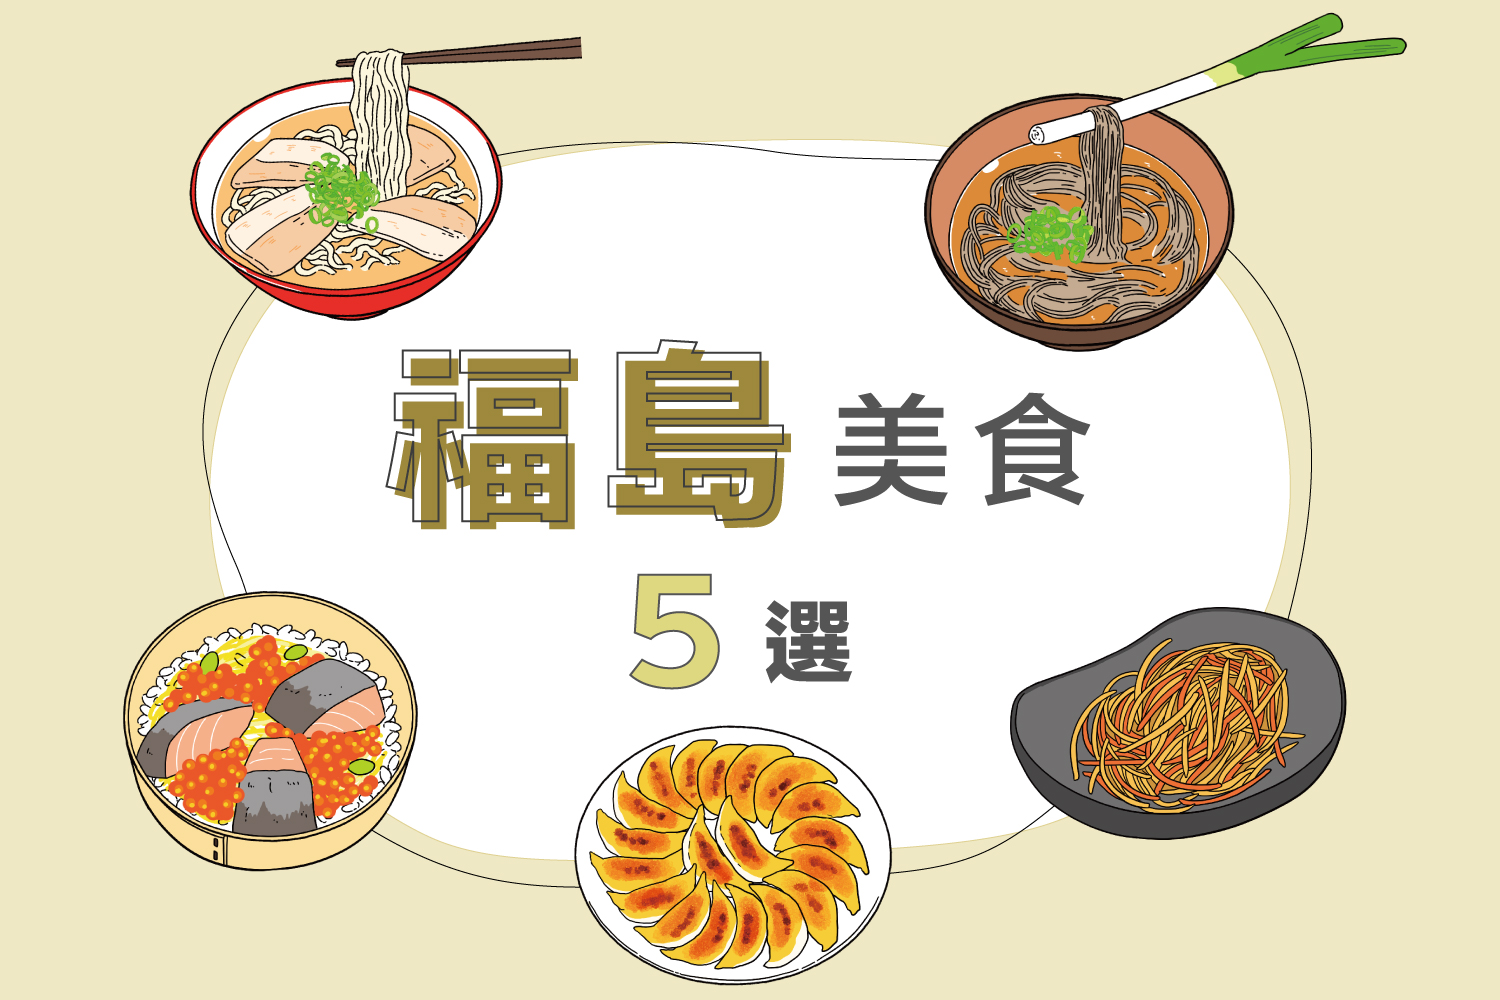 福島美食5選 | 介紹蔥麵、喜多方拉麵、花菜胡蘿蔔等招牌菜品